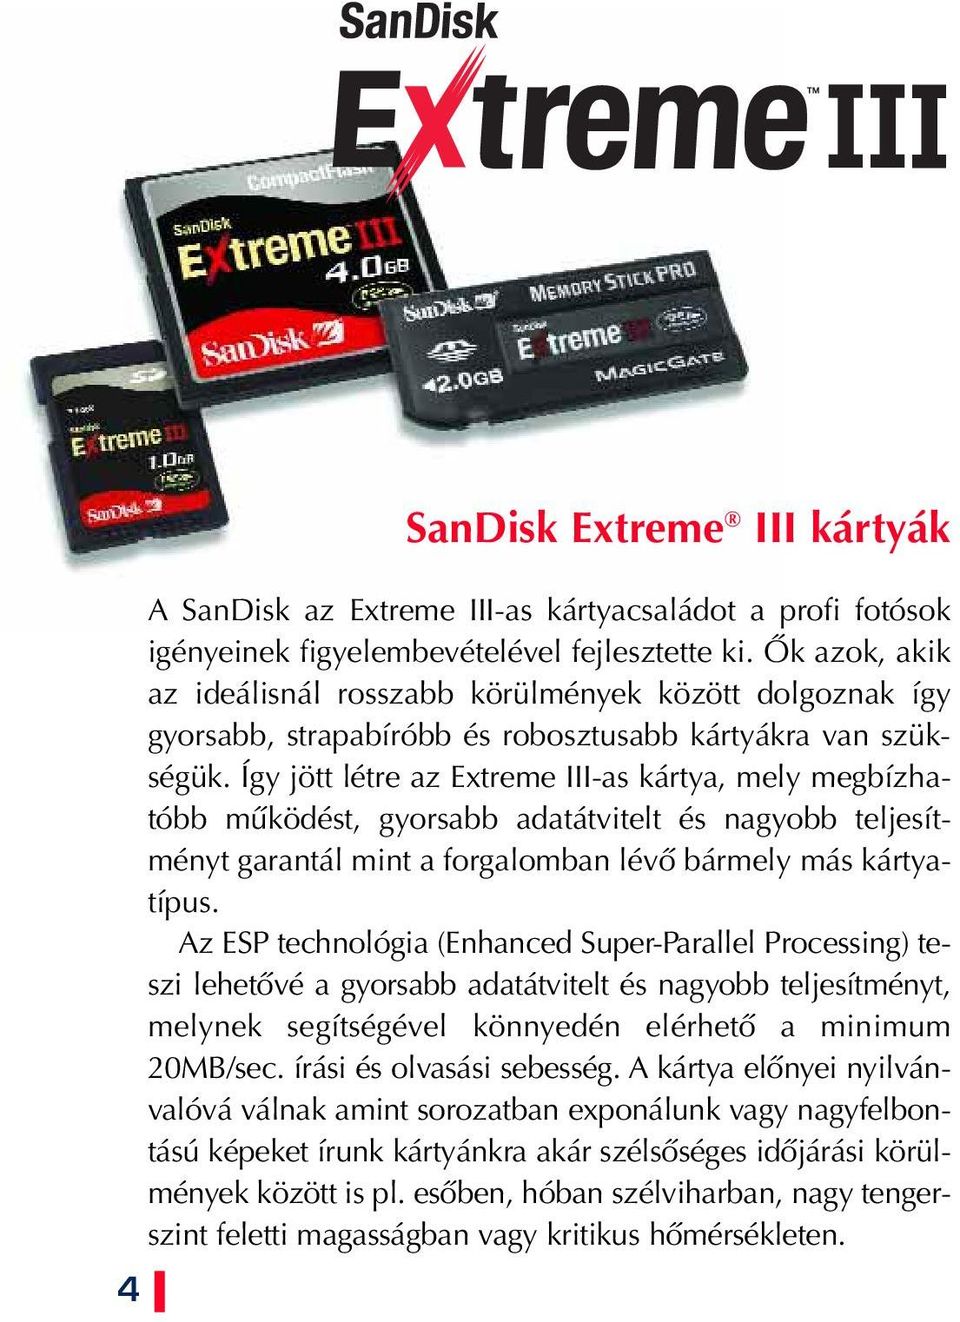 Így jött létre az Extreme III-as kártya, mely megbízhatóbb mûködést, gyorsabb adatátvitelt és nagyobb teljesítményt garantál mint a forgalomban lévô bármely más kártyatípus.